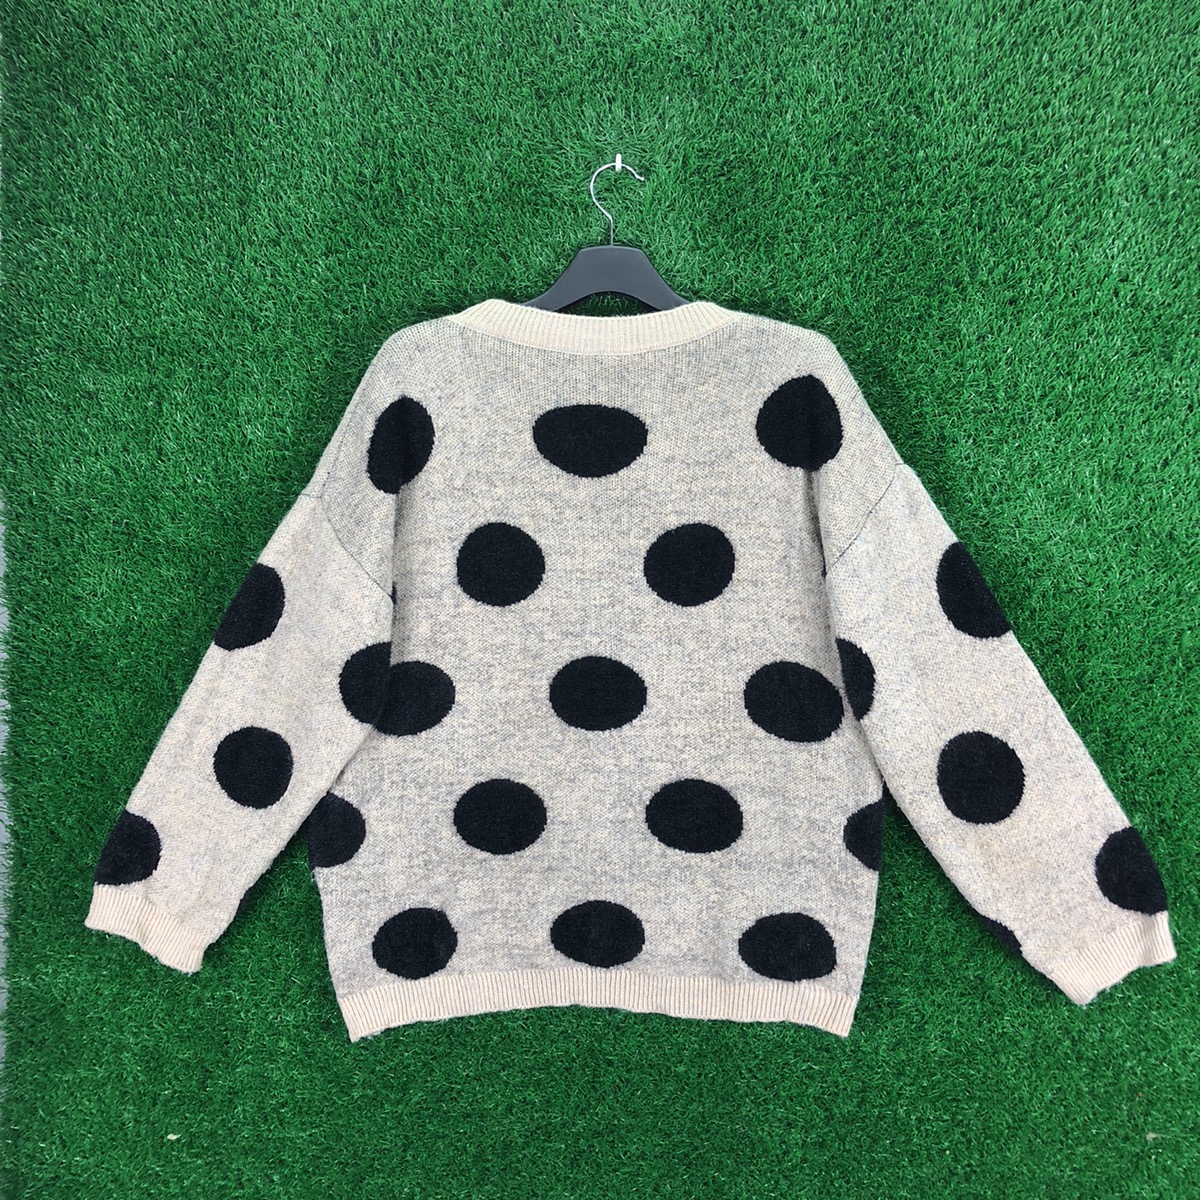 Vintage - Vintage Knit Sweater Polka Dot Japan Designer Brand - 4